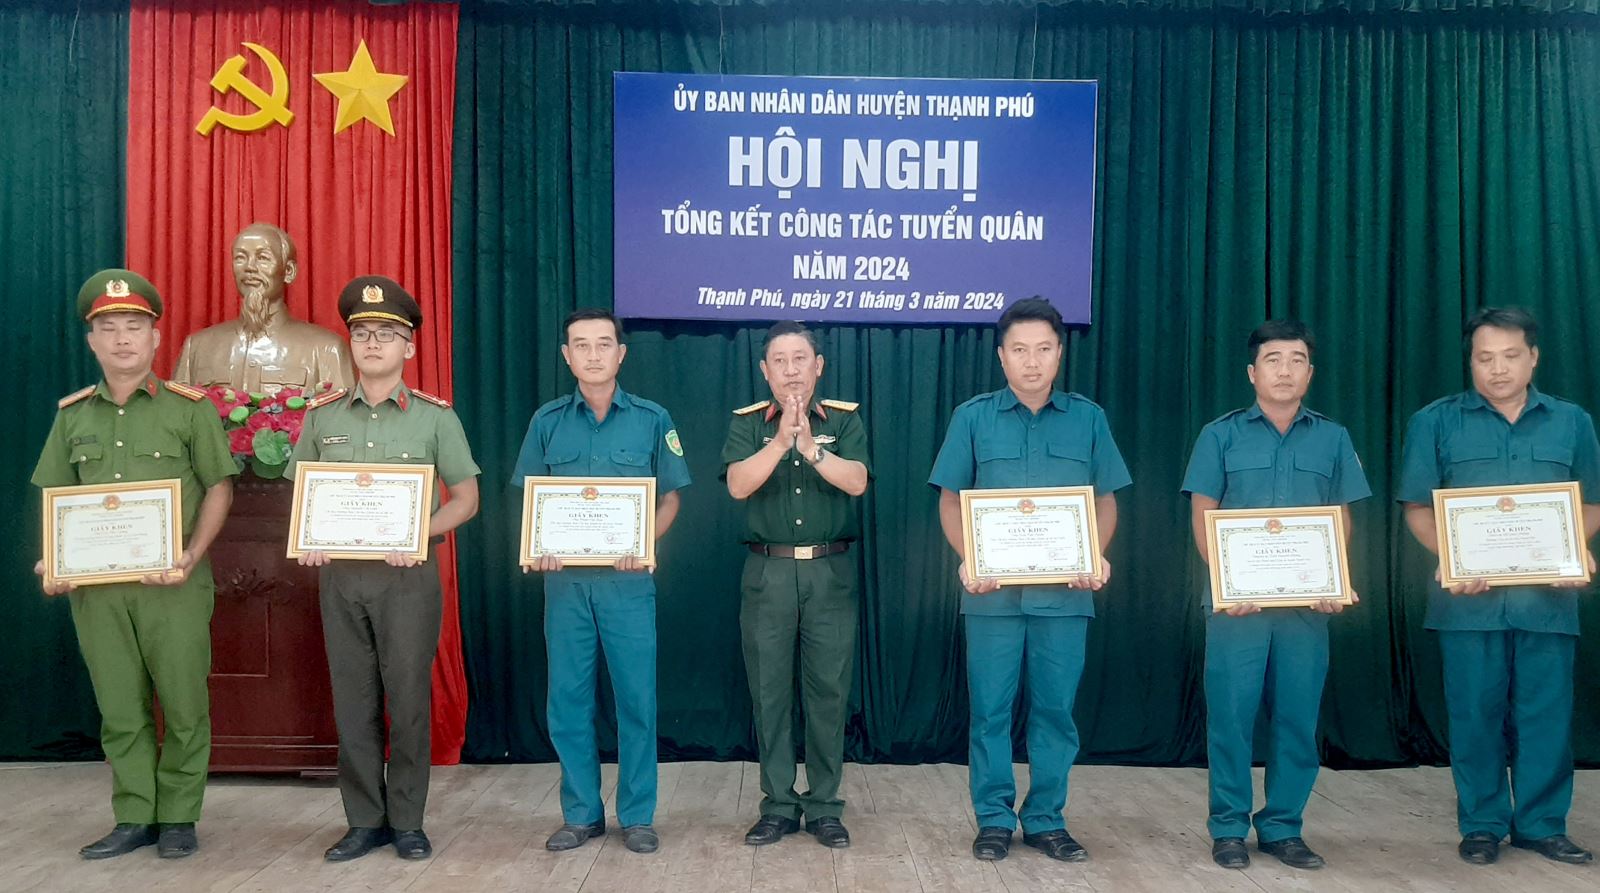 Huyện Thạnh Phú tổng kết công tác tuyển quân năm 2024